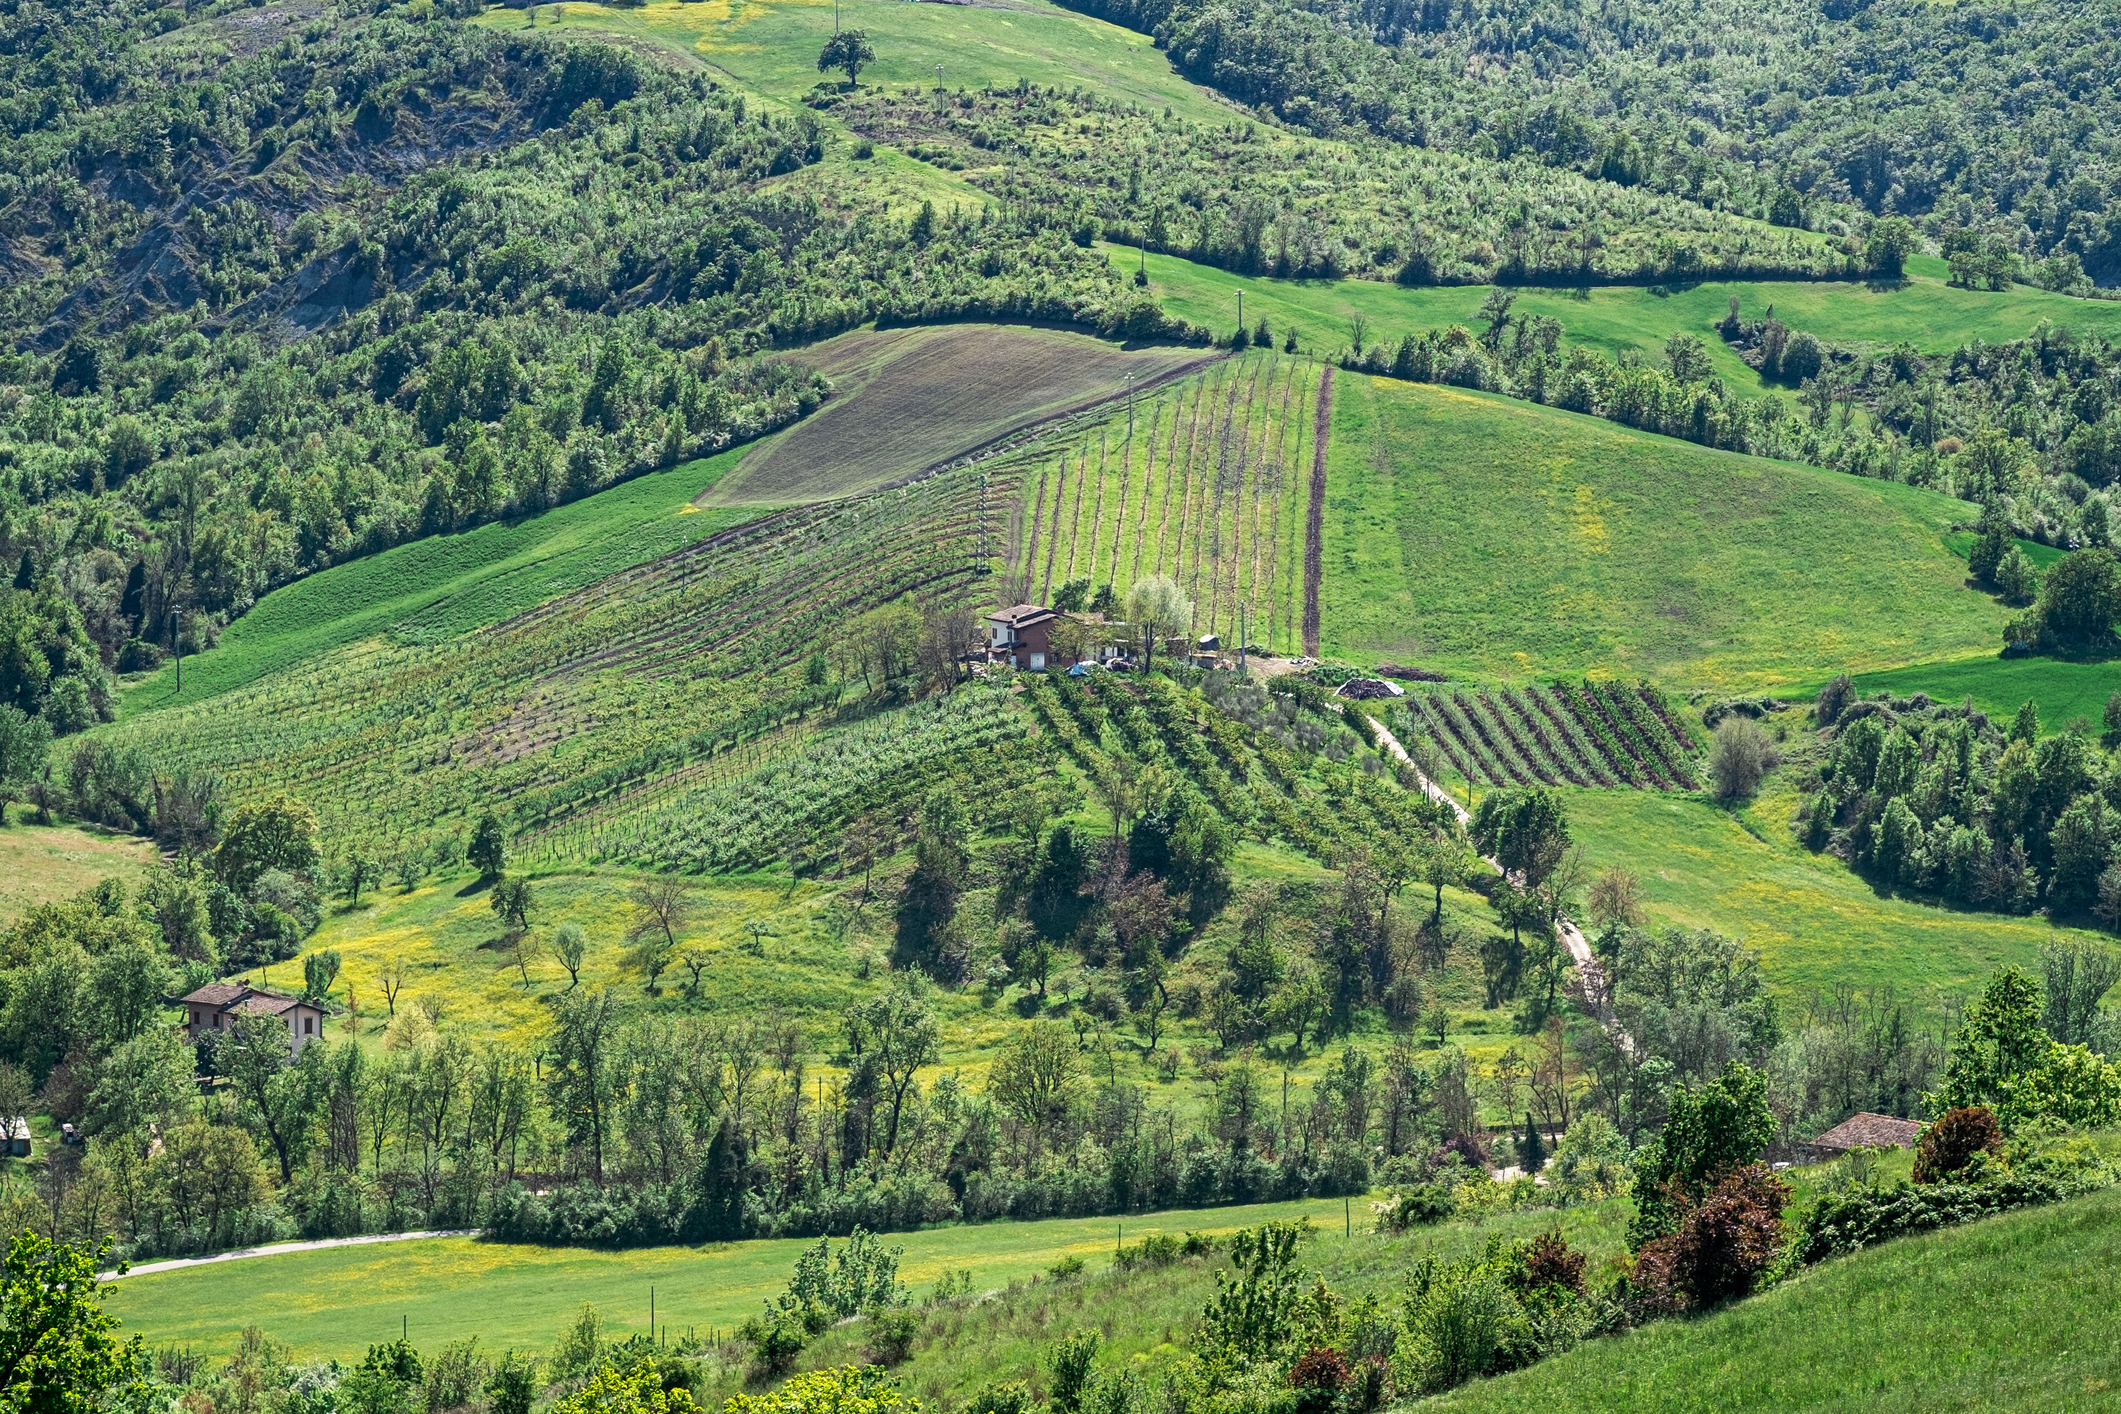 Imagini cu dealurile cultivate din apropierea Castelului din Serravalle. Agricultura este un domeniu esențial pentru San Marino (sursă foto: dreamstime)